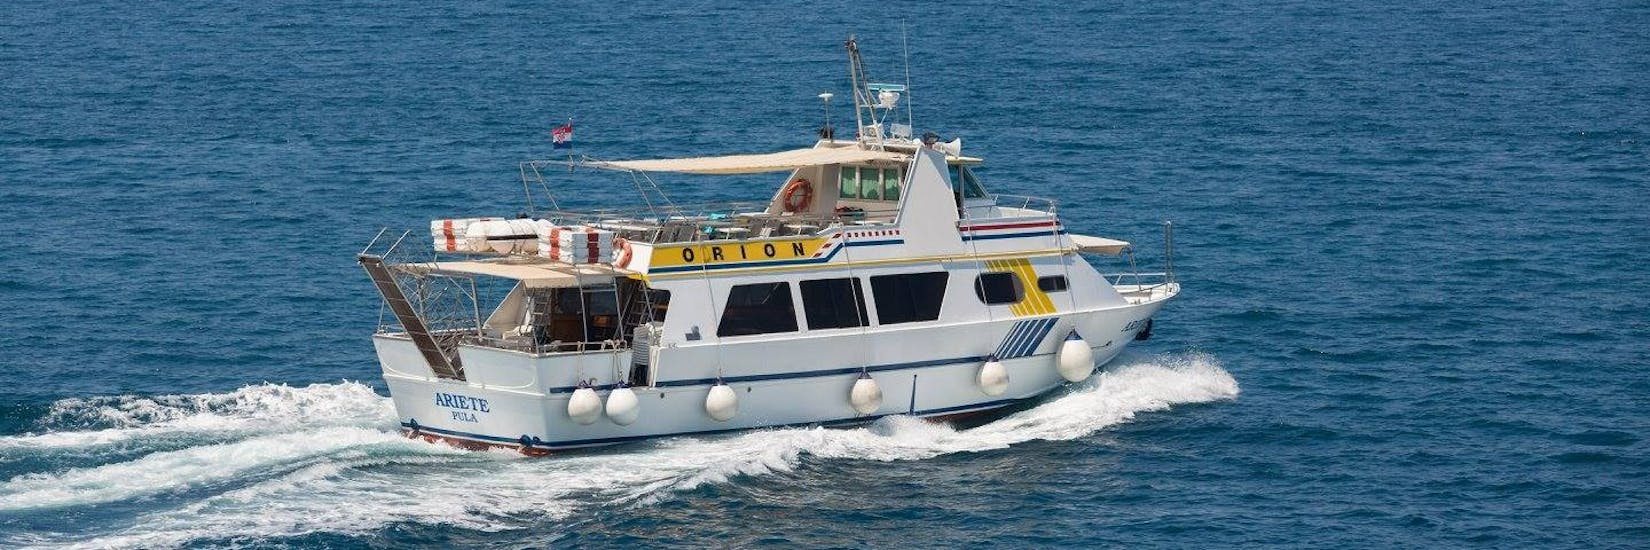 Das Boot von Orion Travel Pula auf dem Meer während der Bootstour von Pula nach Rovinj.